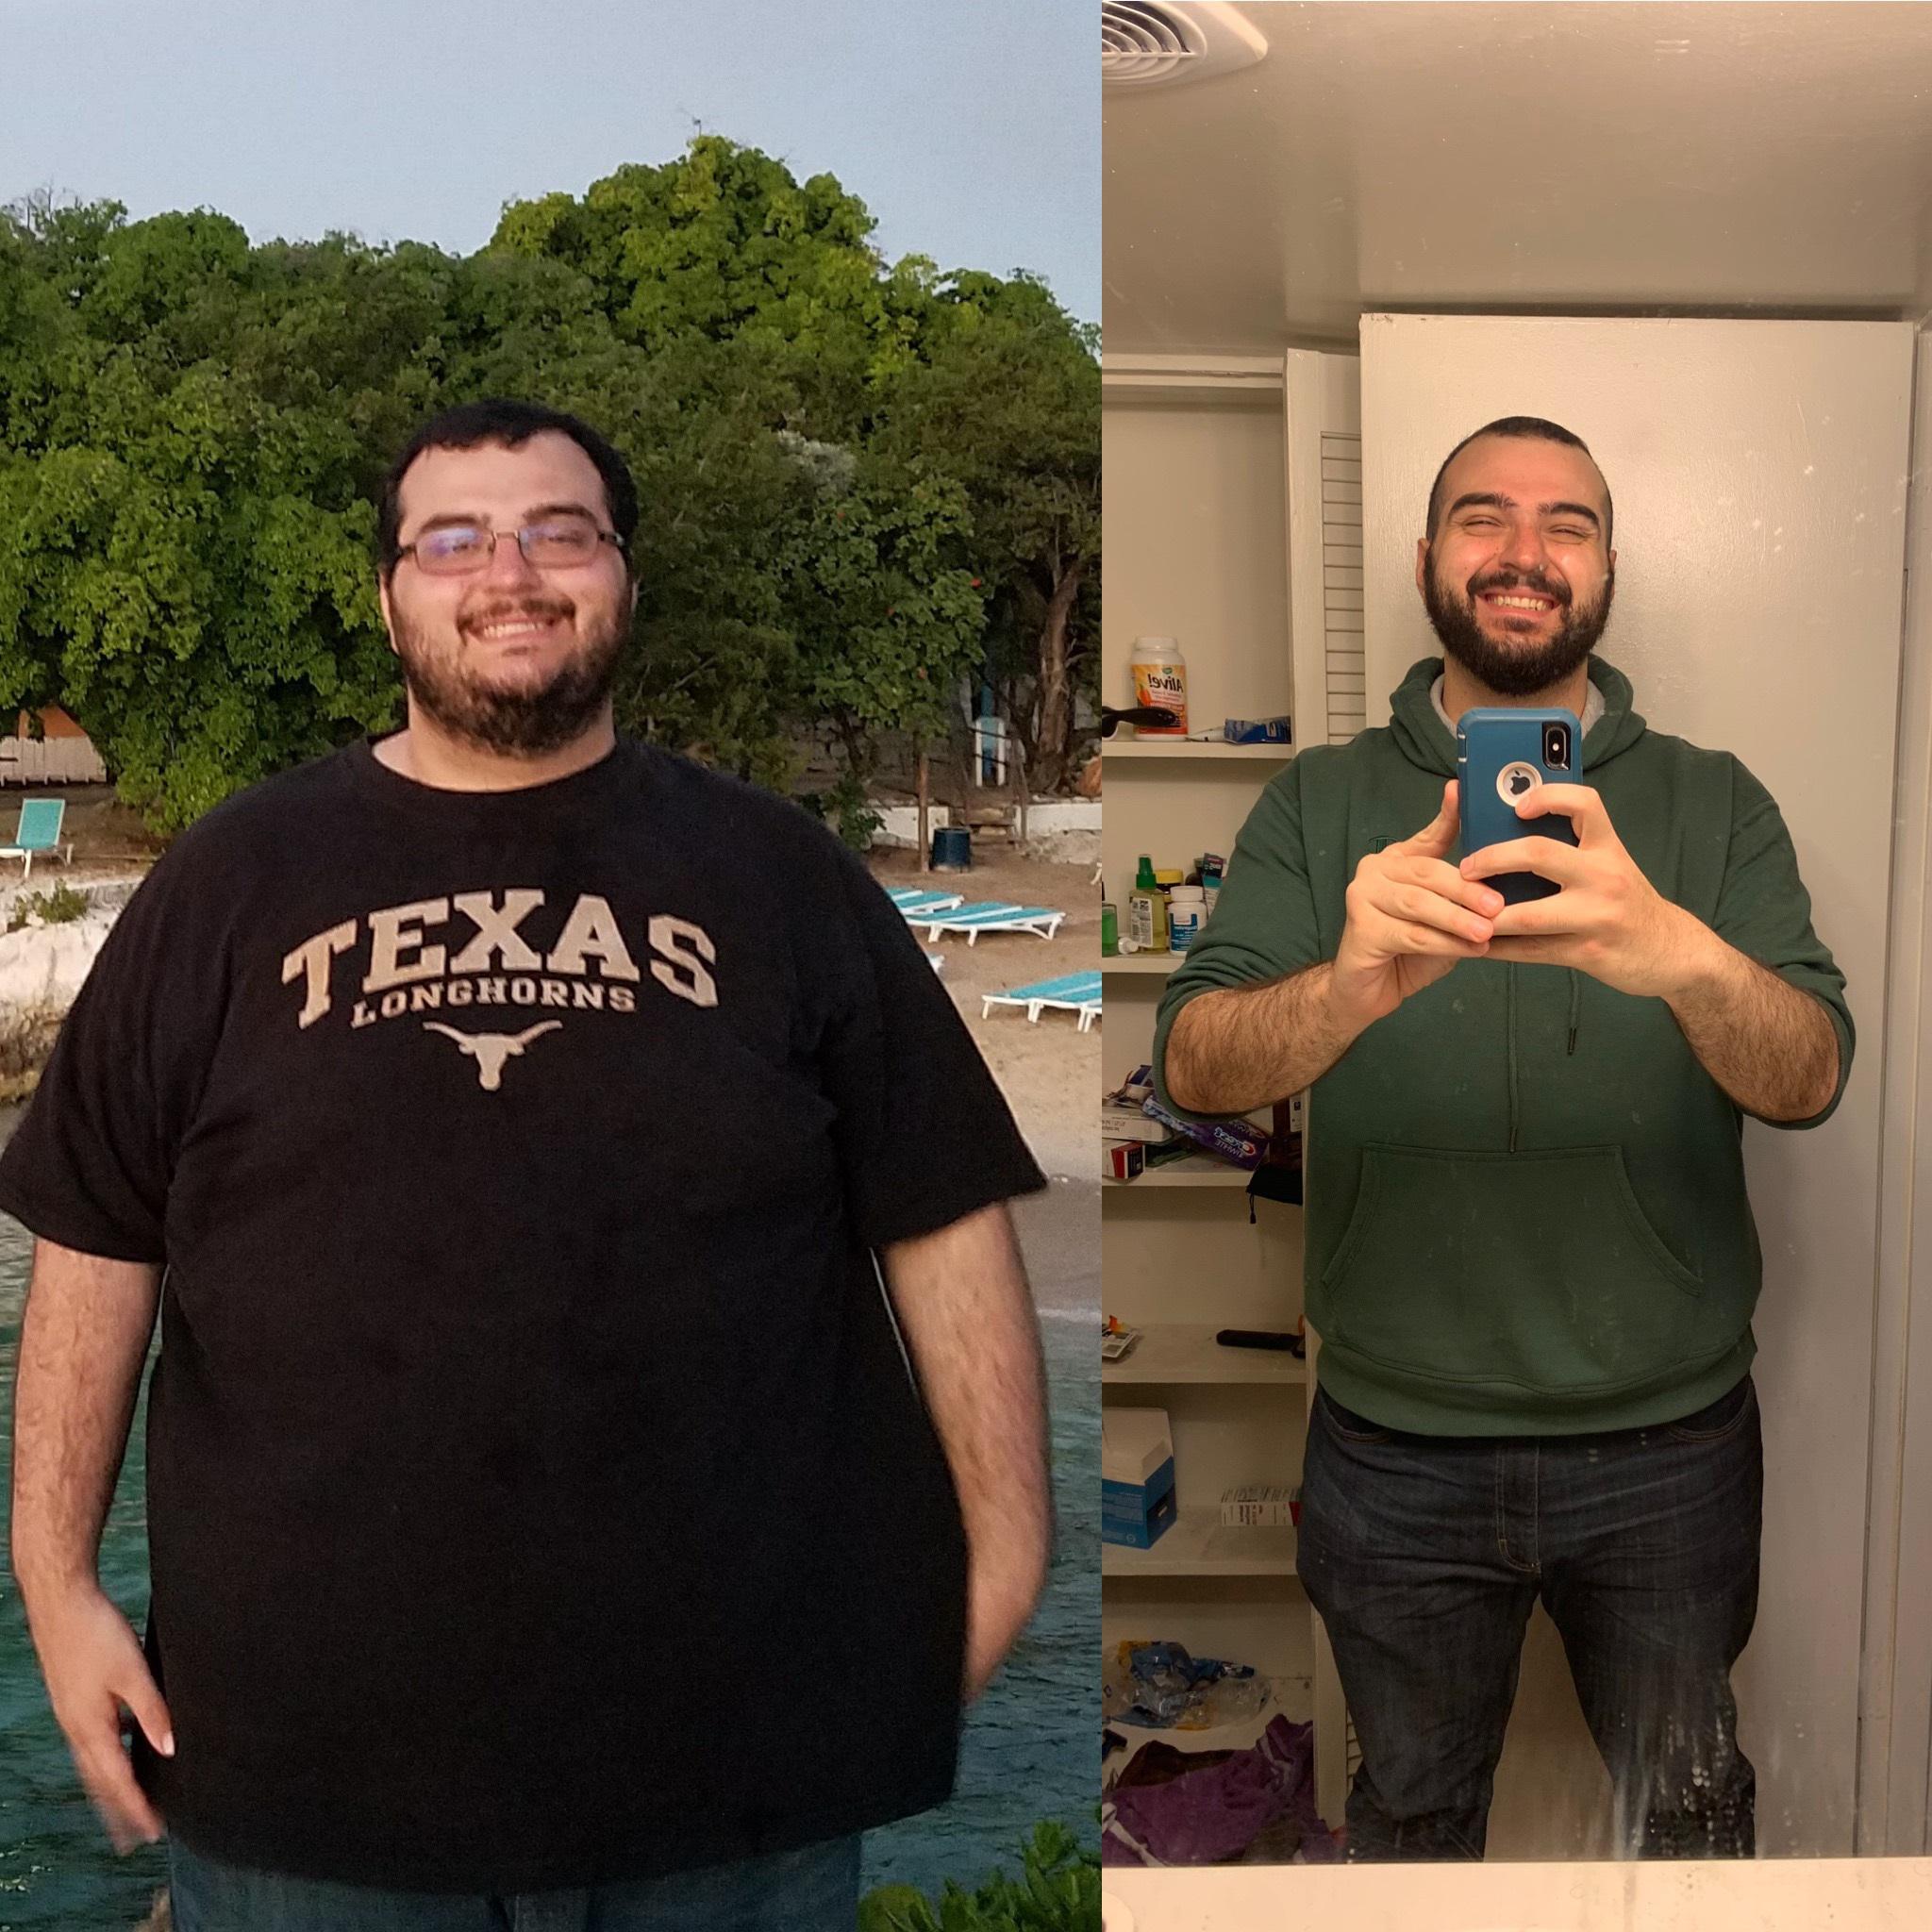 результаты похудения до и после фото мужчины